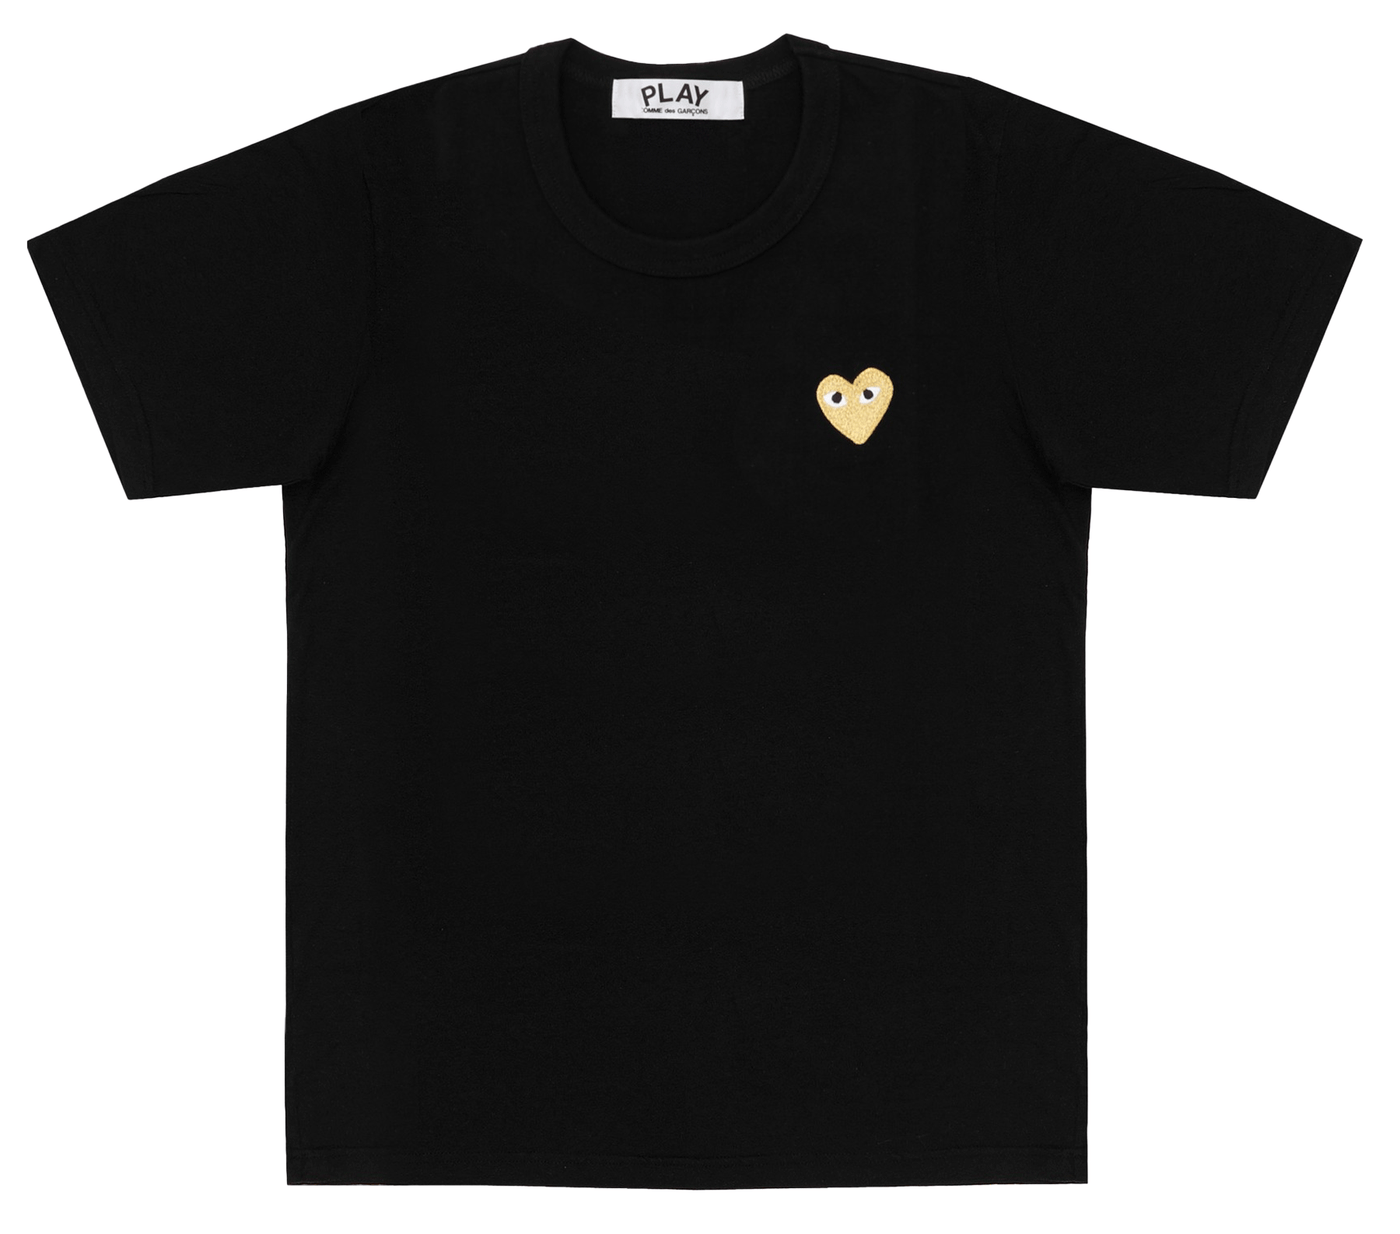     Comme-des-Garcons-Play-T-Shirt-With-Gold-Emblem-Women-Black-1